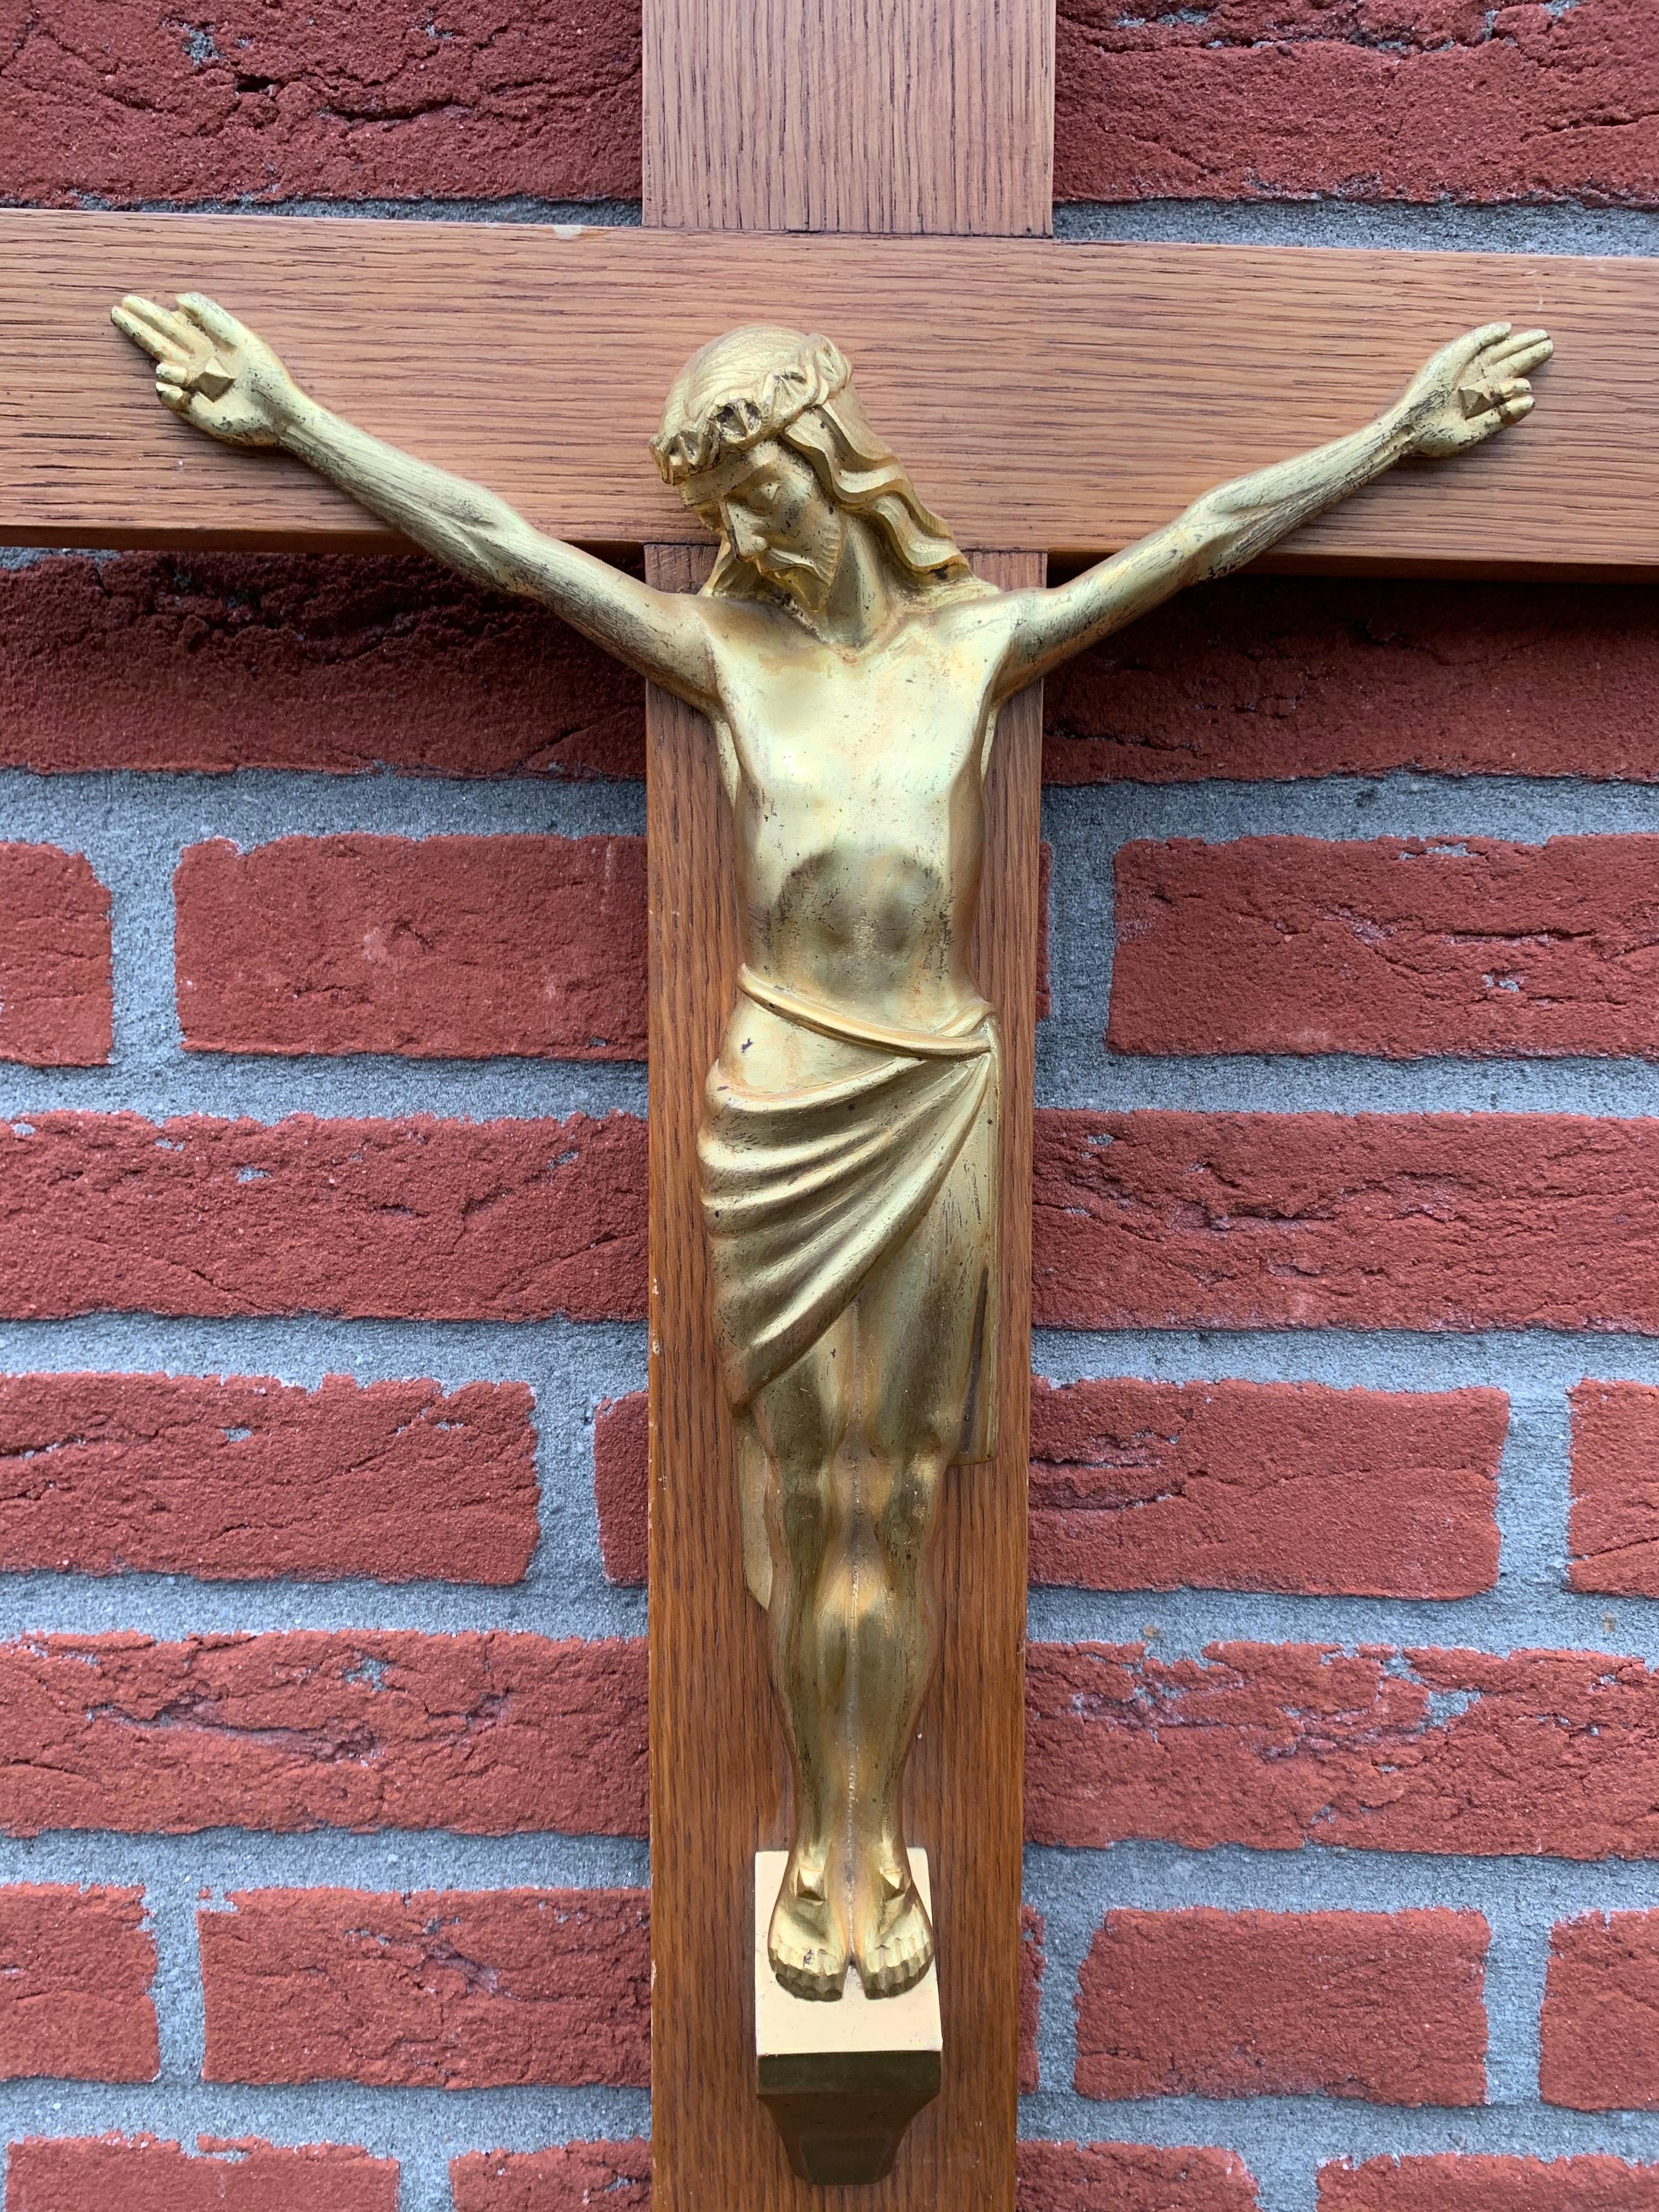 Seltene und schöne, feuervergoldete Christus-Skulptur aus der Zeit des Art déco.

Manche Kruzifixe zeigen Christus in schrecklichen Qualen, aber das Gesicht unter der Dornenkrone dieses Christus strahlt nichts als Ruhe und Gelassenheit aus. Sowohl